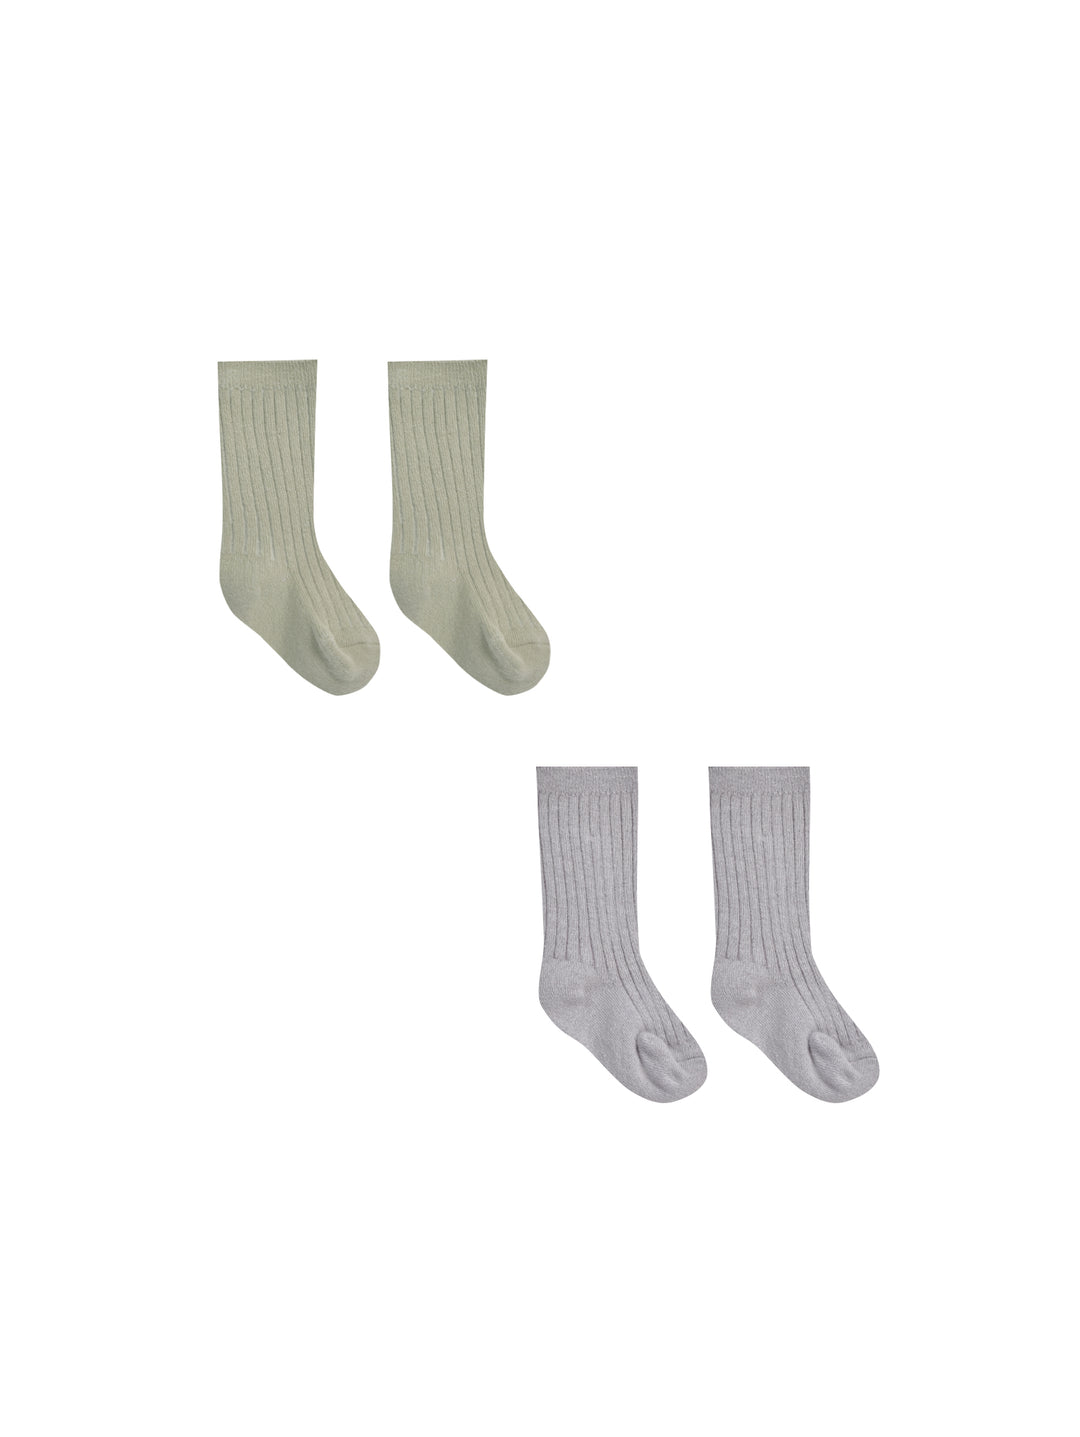 Socks Set, Sage + Periwinkle